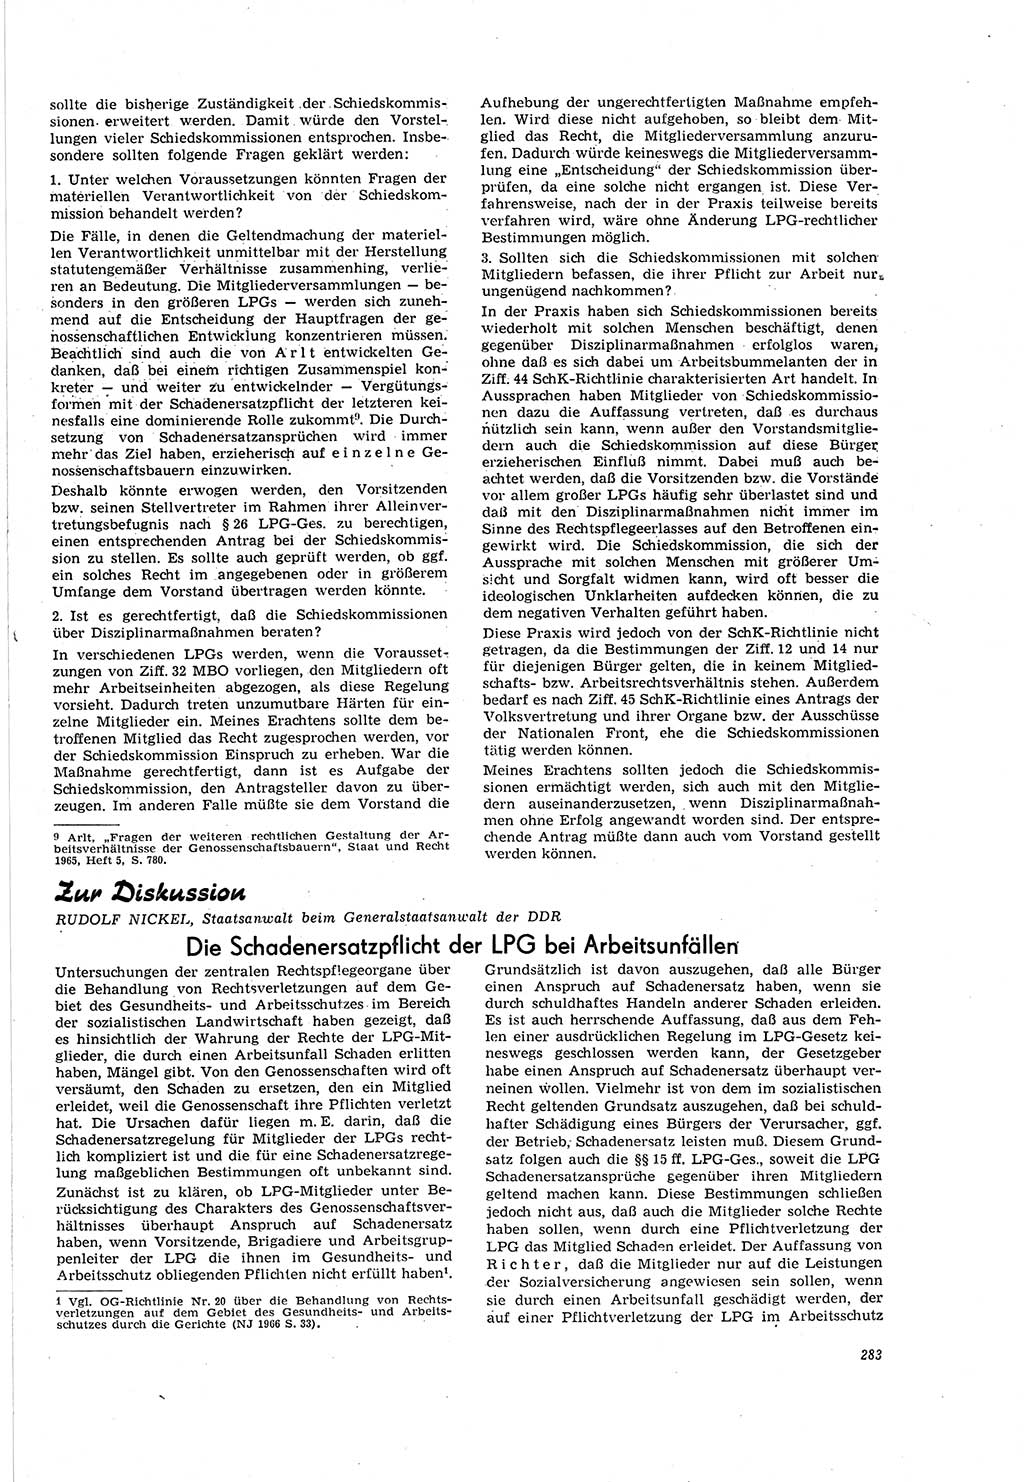 Neue Justiz (NJ), Zeitschrift für Recht und Rechtswissenschaft [Deutsche Demokratische Republik (DDR)], 20. Jahrgang 1966, Seite 283 (NJ DDR 1966, S. 283)